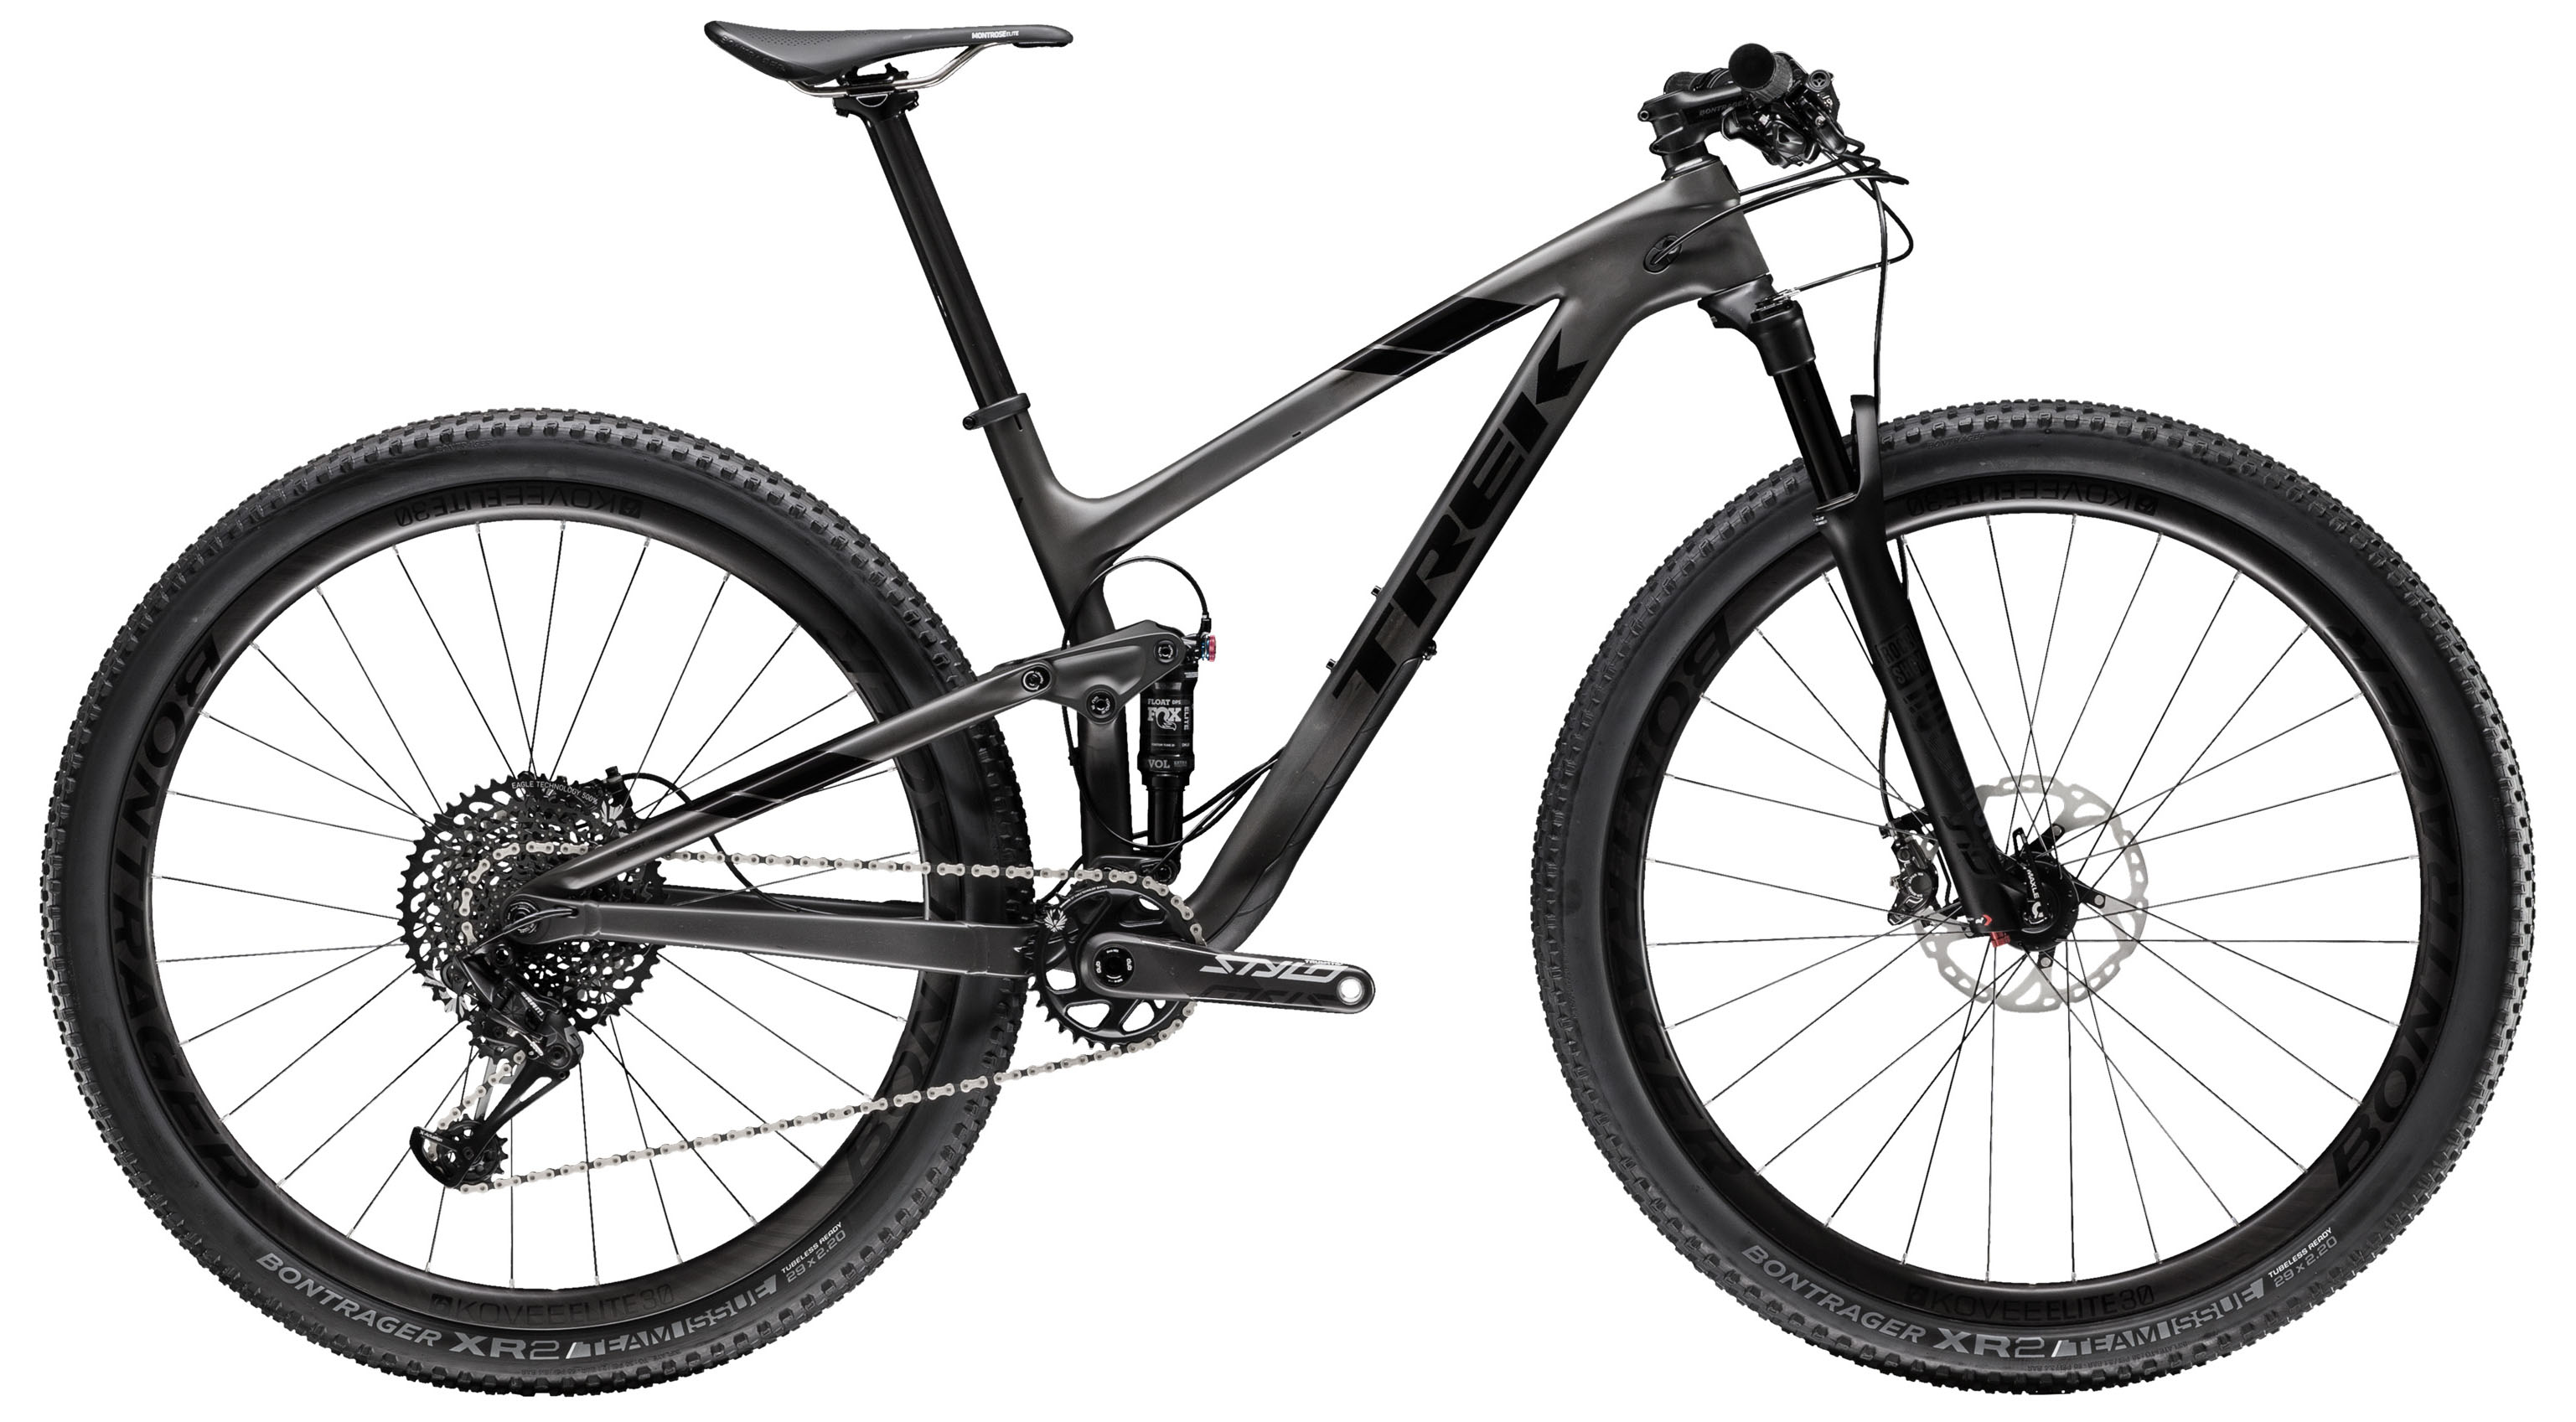  Отзывы о Двухподвесном велосипеде Trek Top Fuel 9.8 SL 27,5 2019